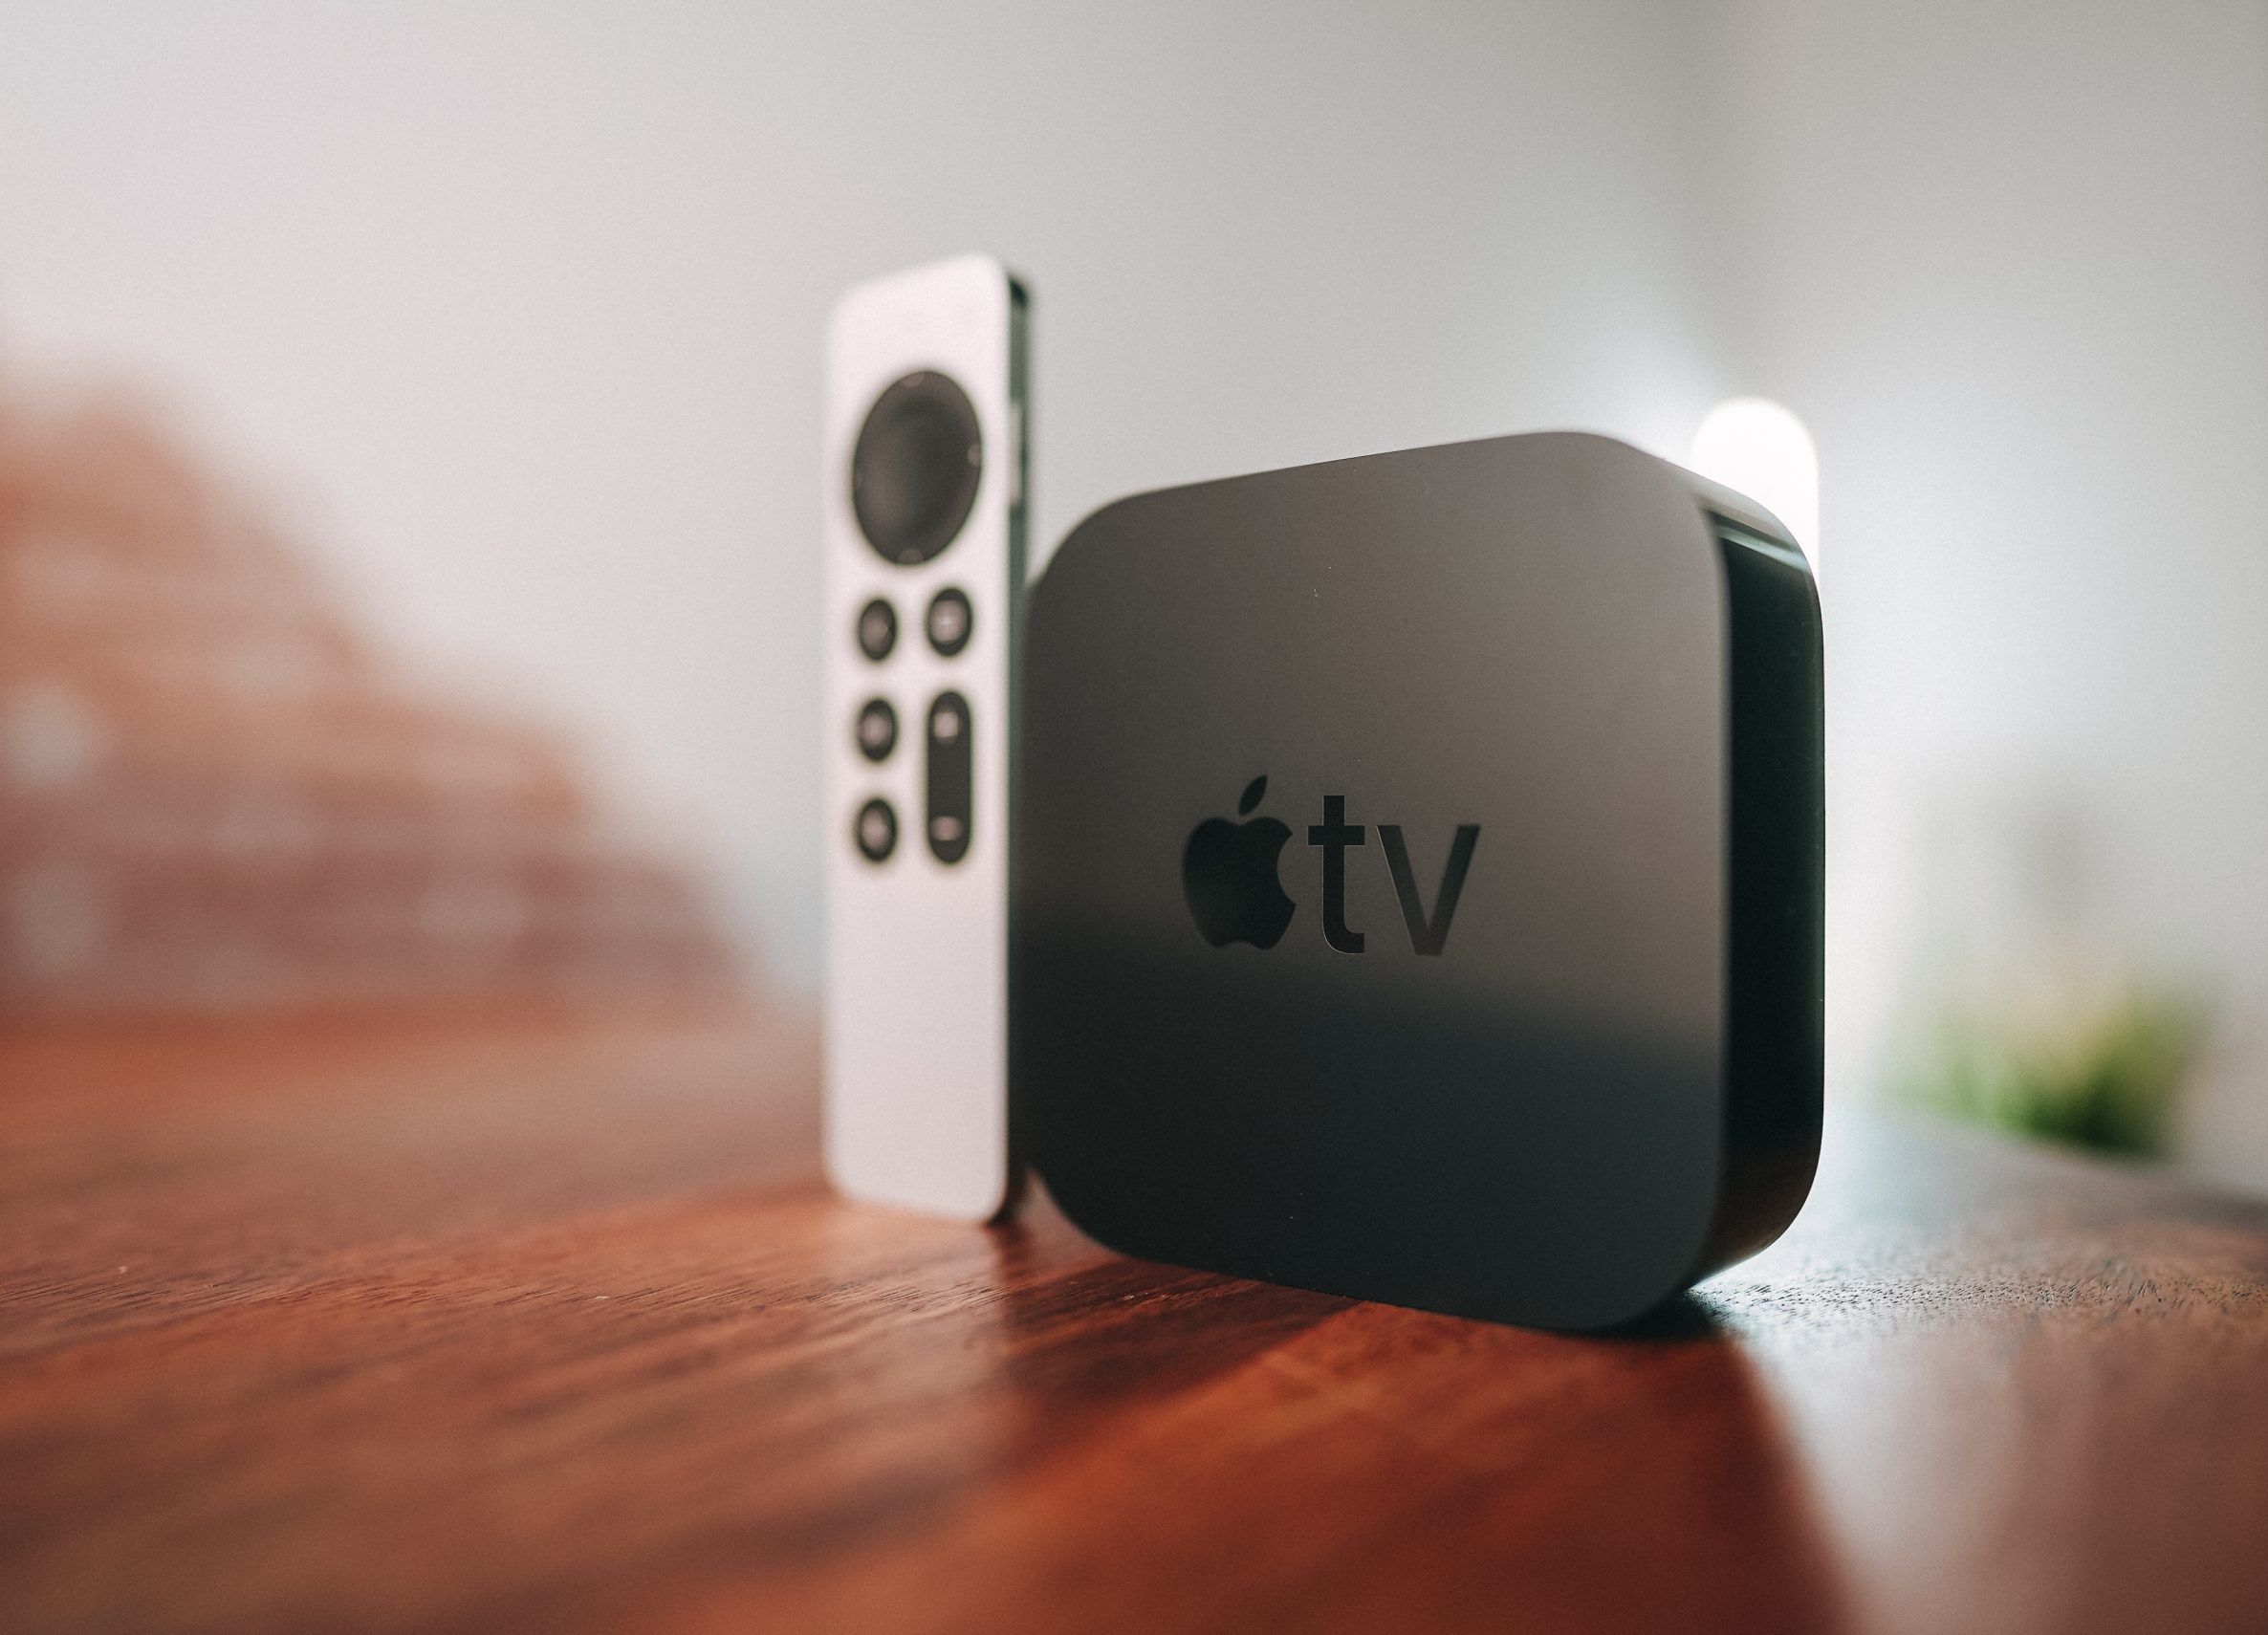 Cómo restablecer los valores de fábrica de Apple TV.